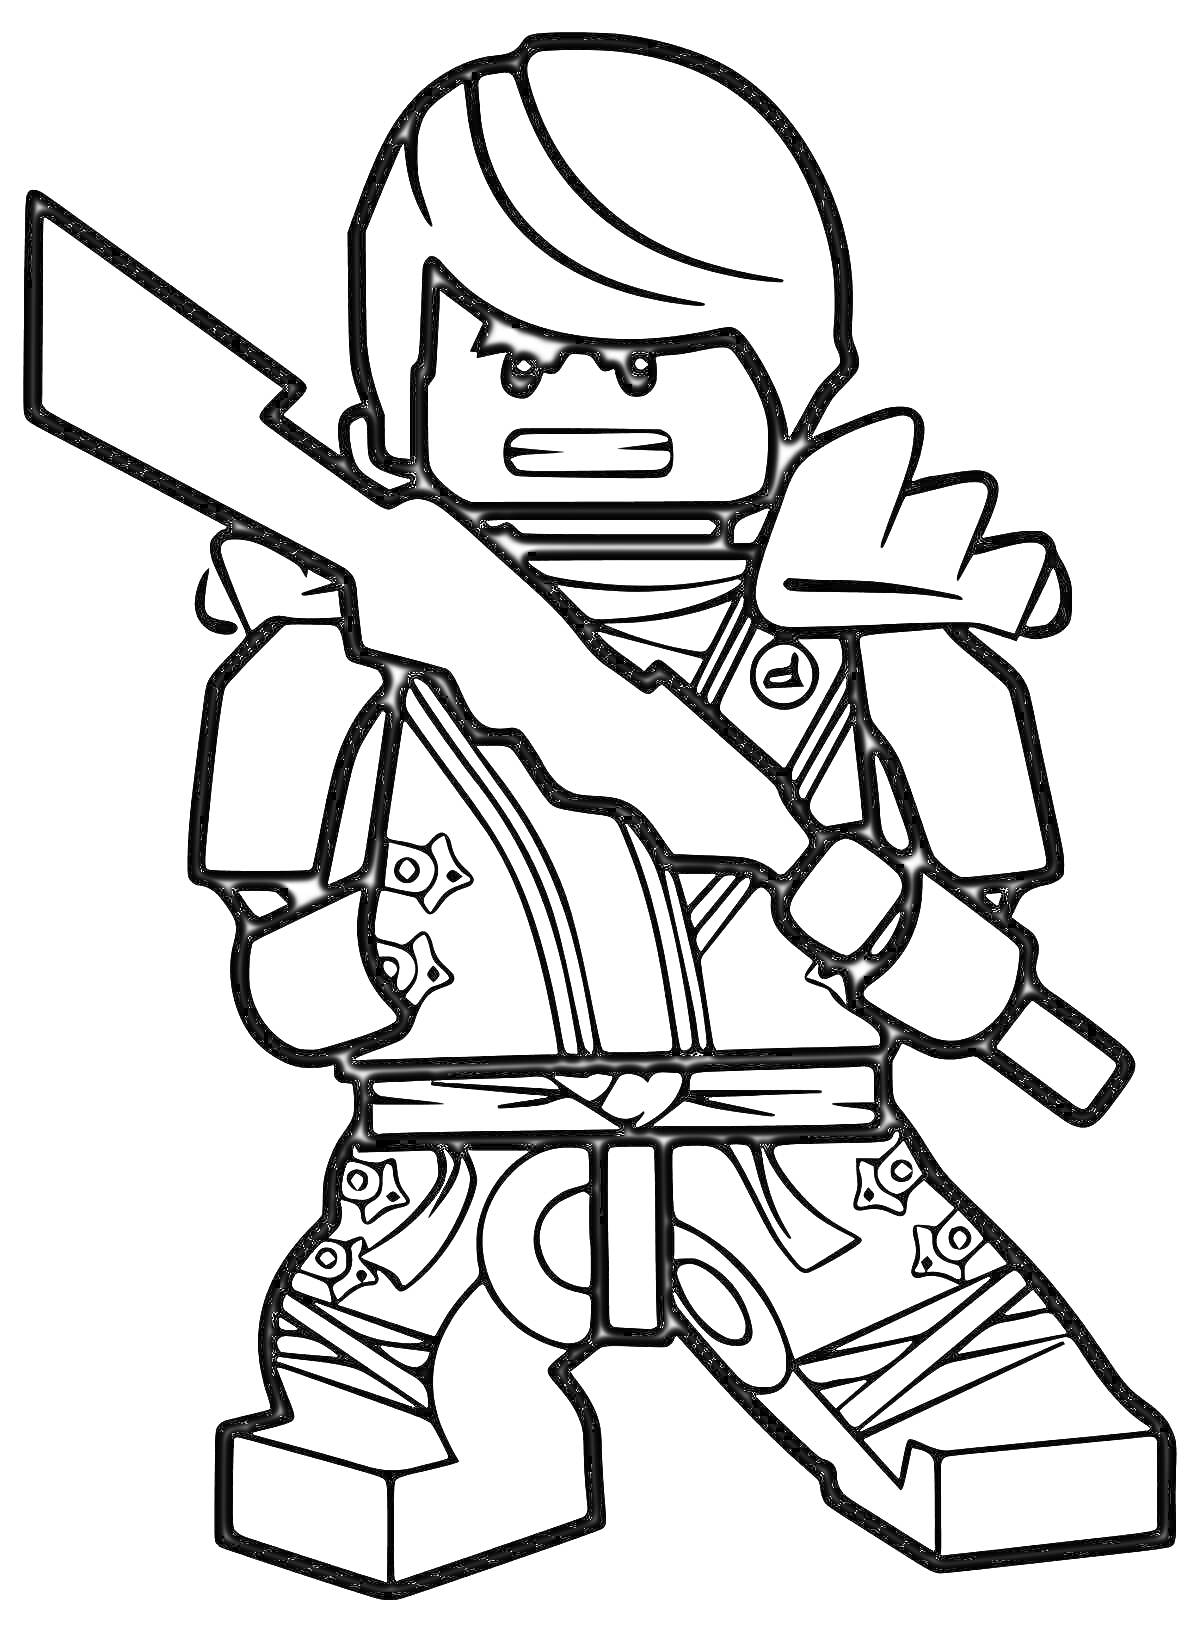 Раскраска Лего-ниндзя с мечом и сюрикенами